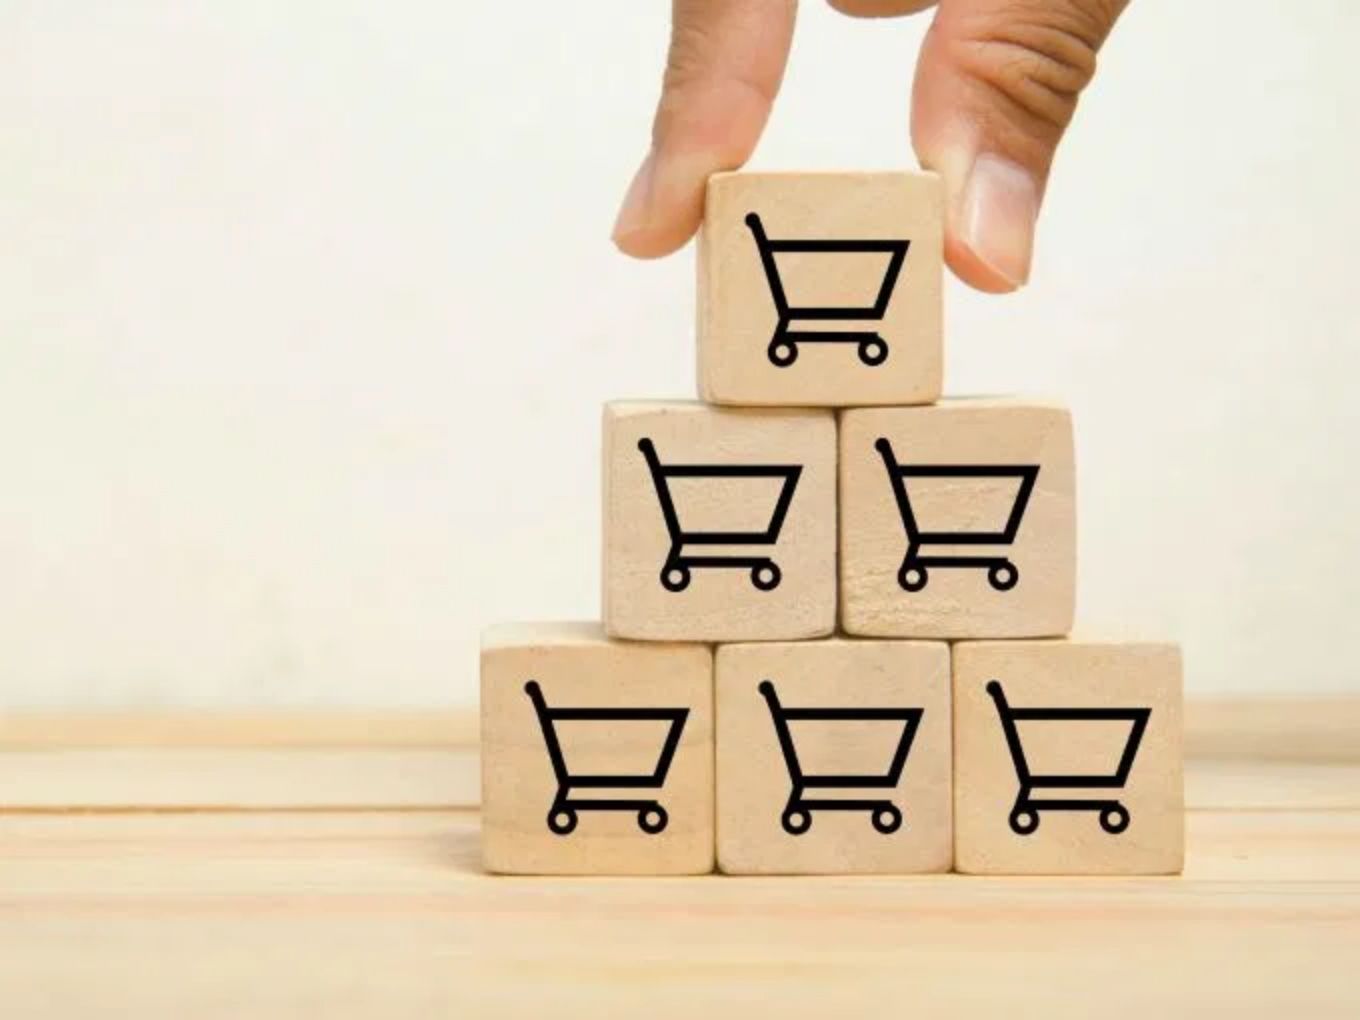 Flipkart, Amazon Ask Brands To Prepare For Online Sale To Meet Demand